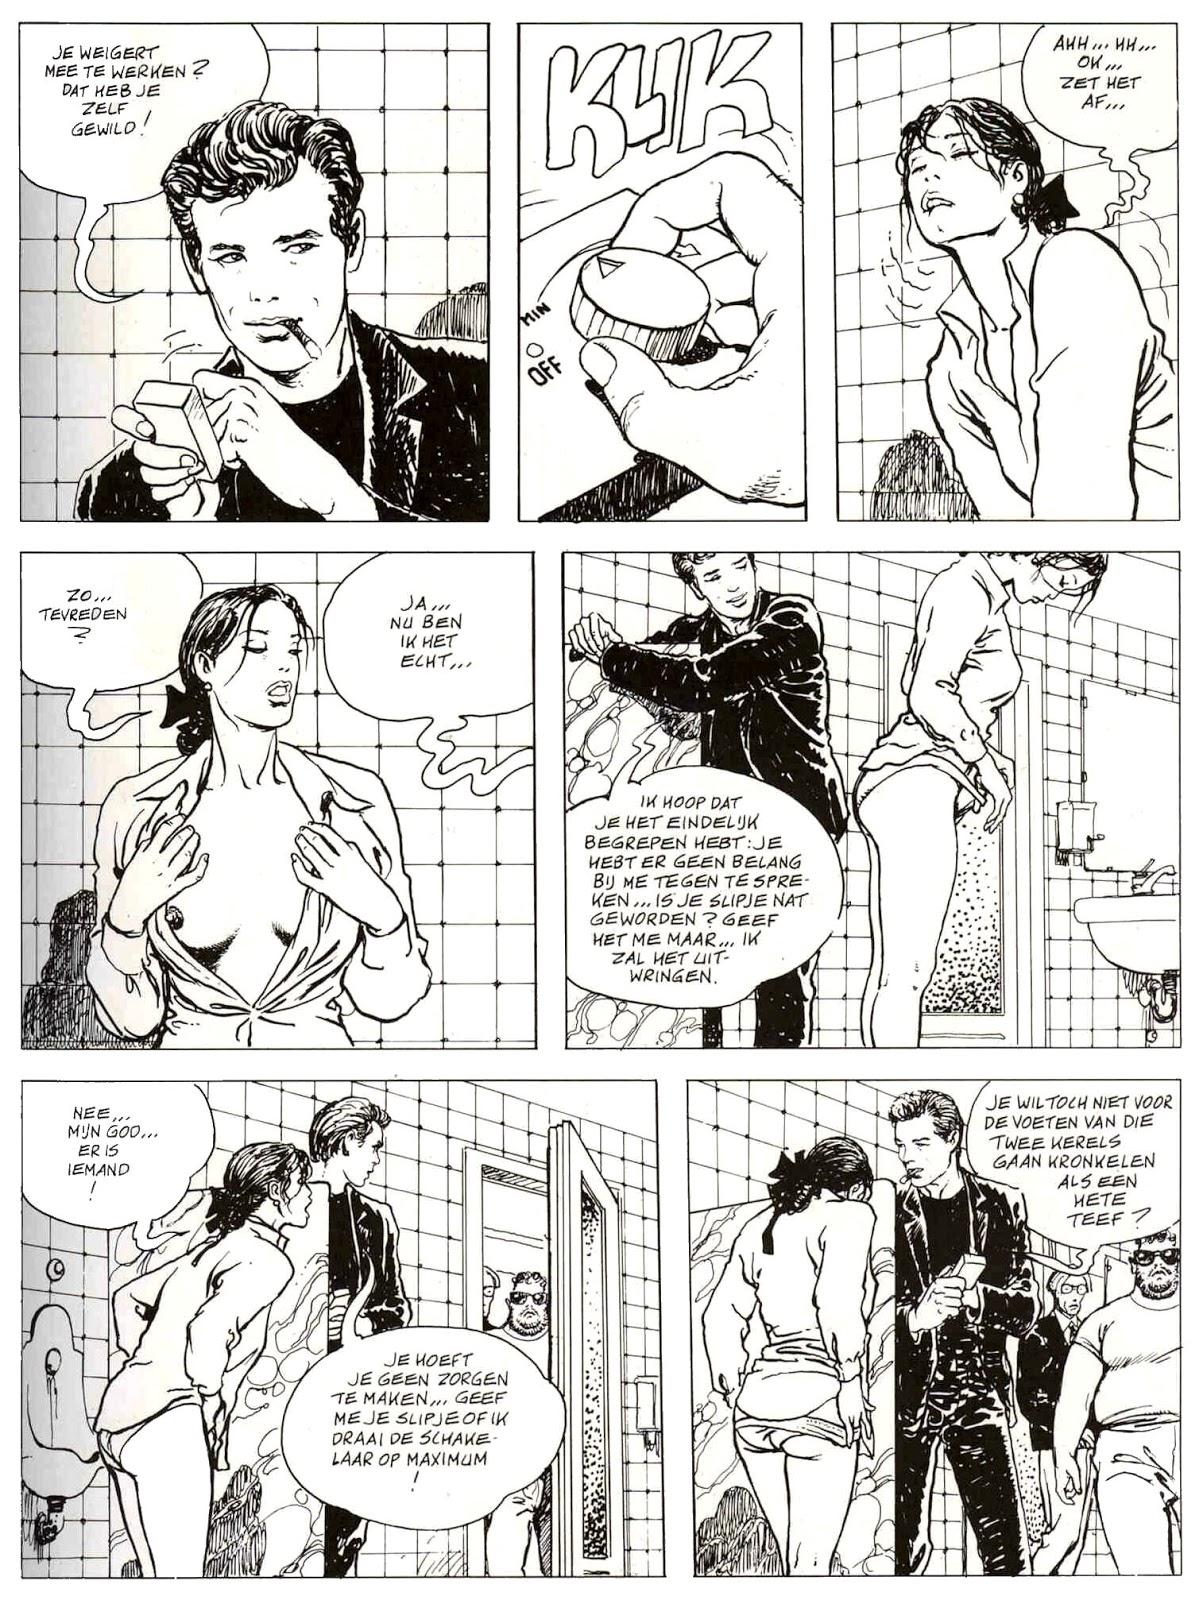 Erotische strip van Milo Manara wegens succes nog eentje.